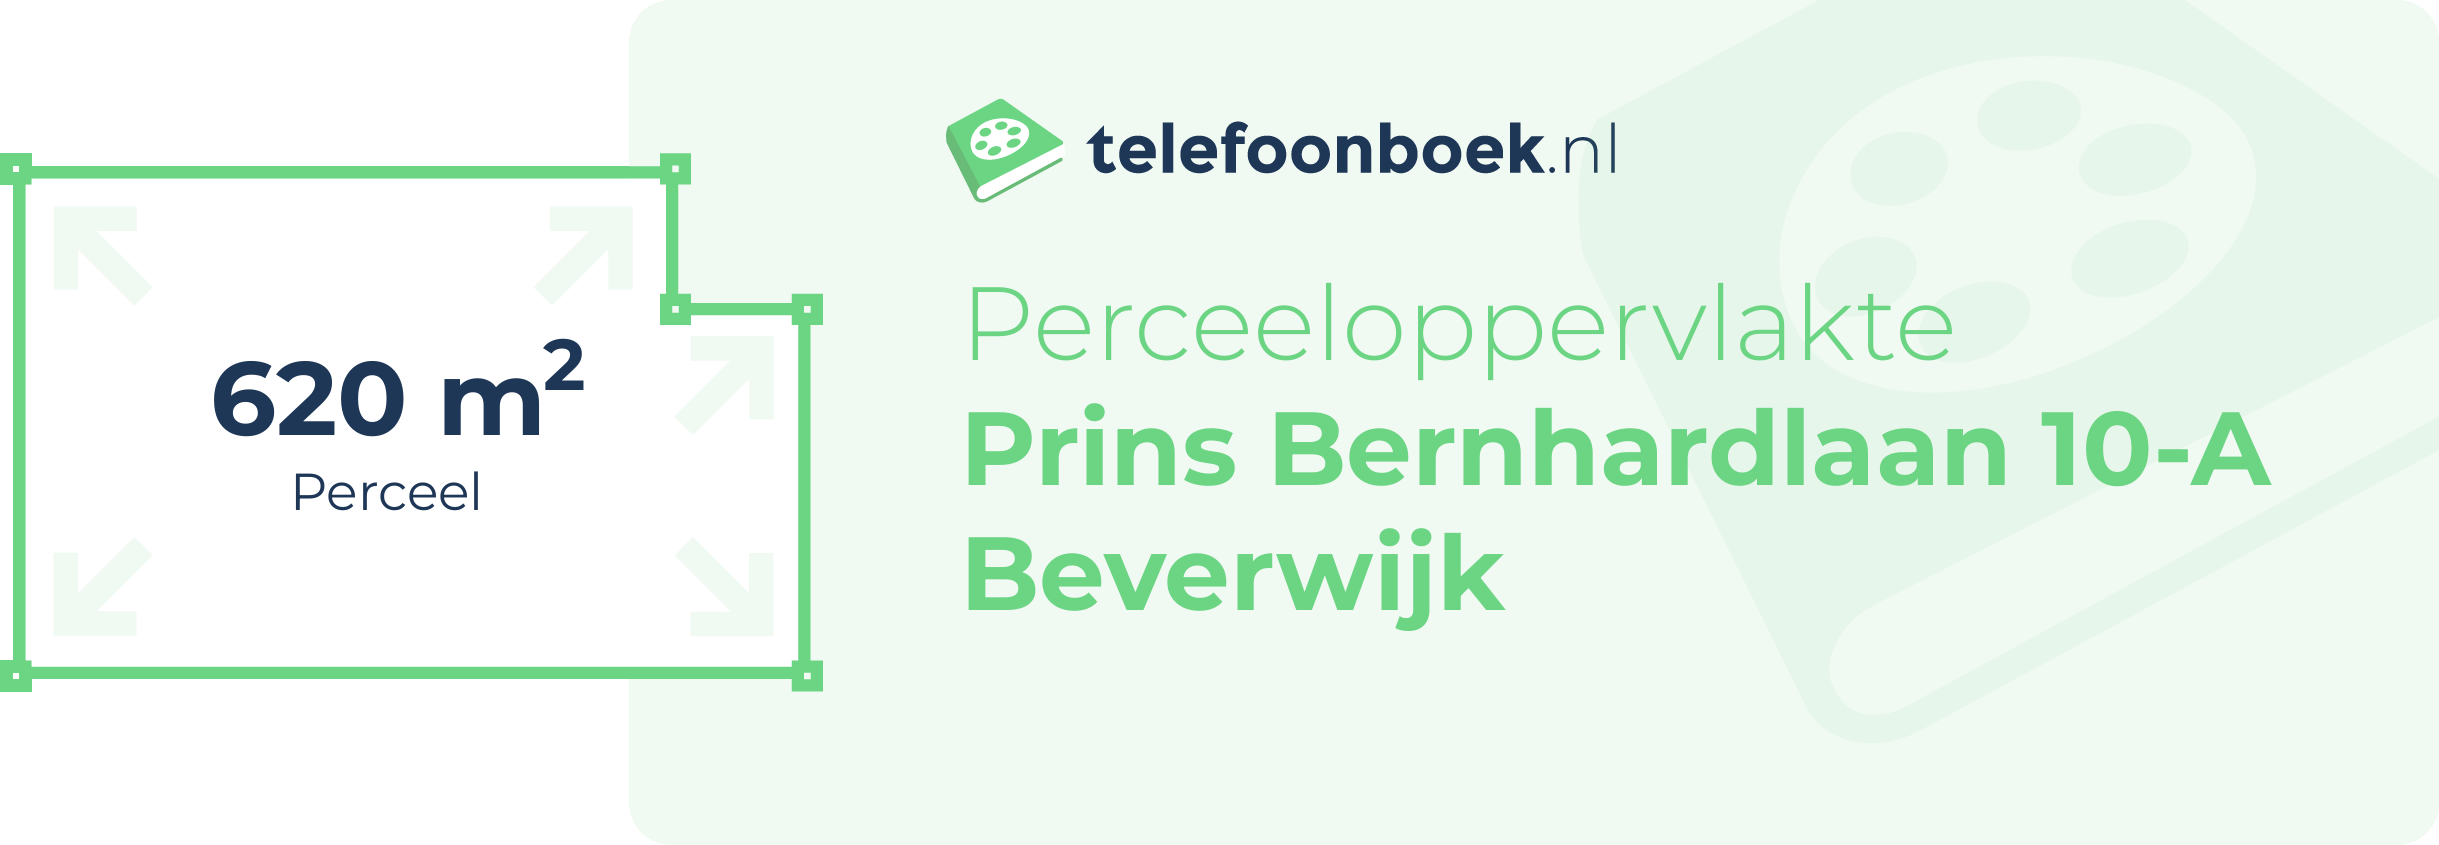 Perceeloppervlakte Prins Bernhardlaan 10-A Beverwijk